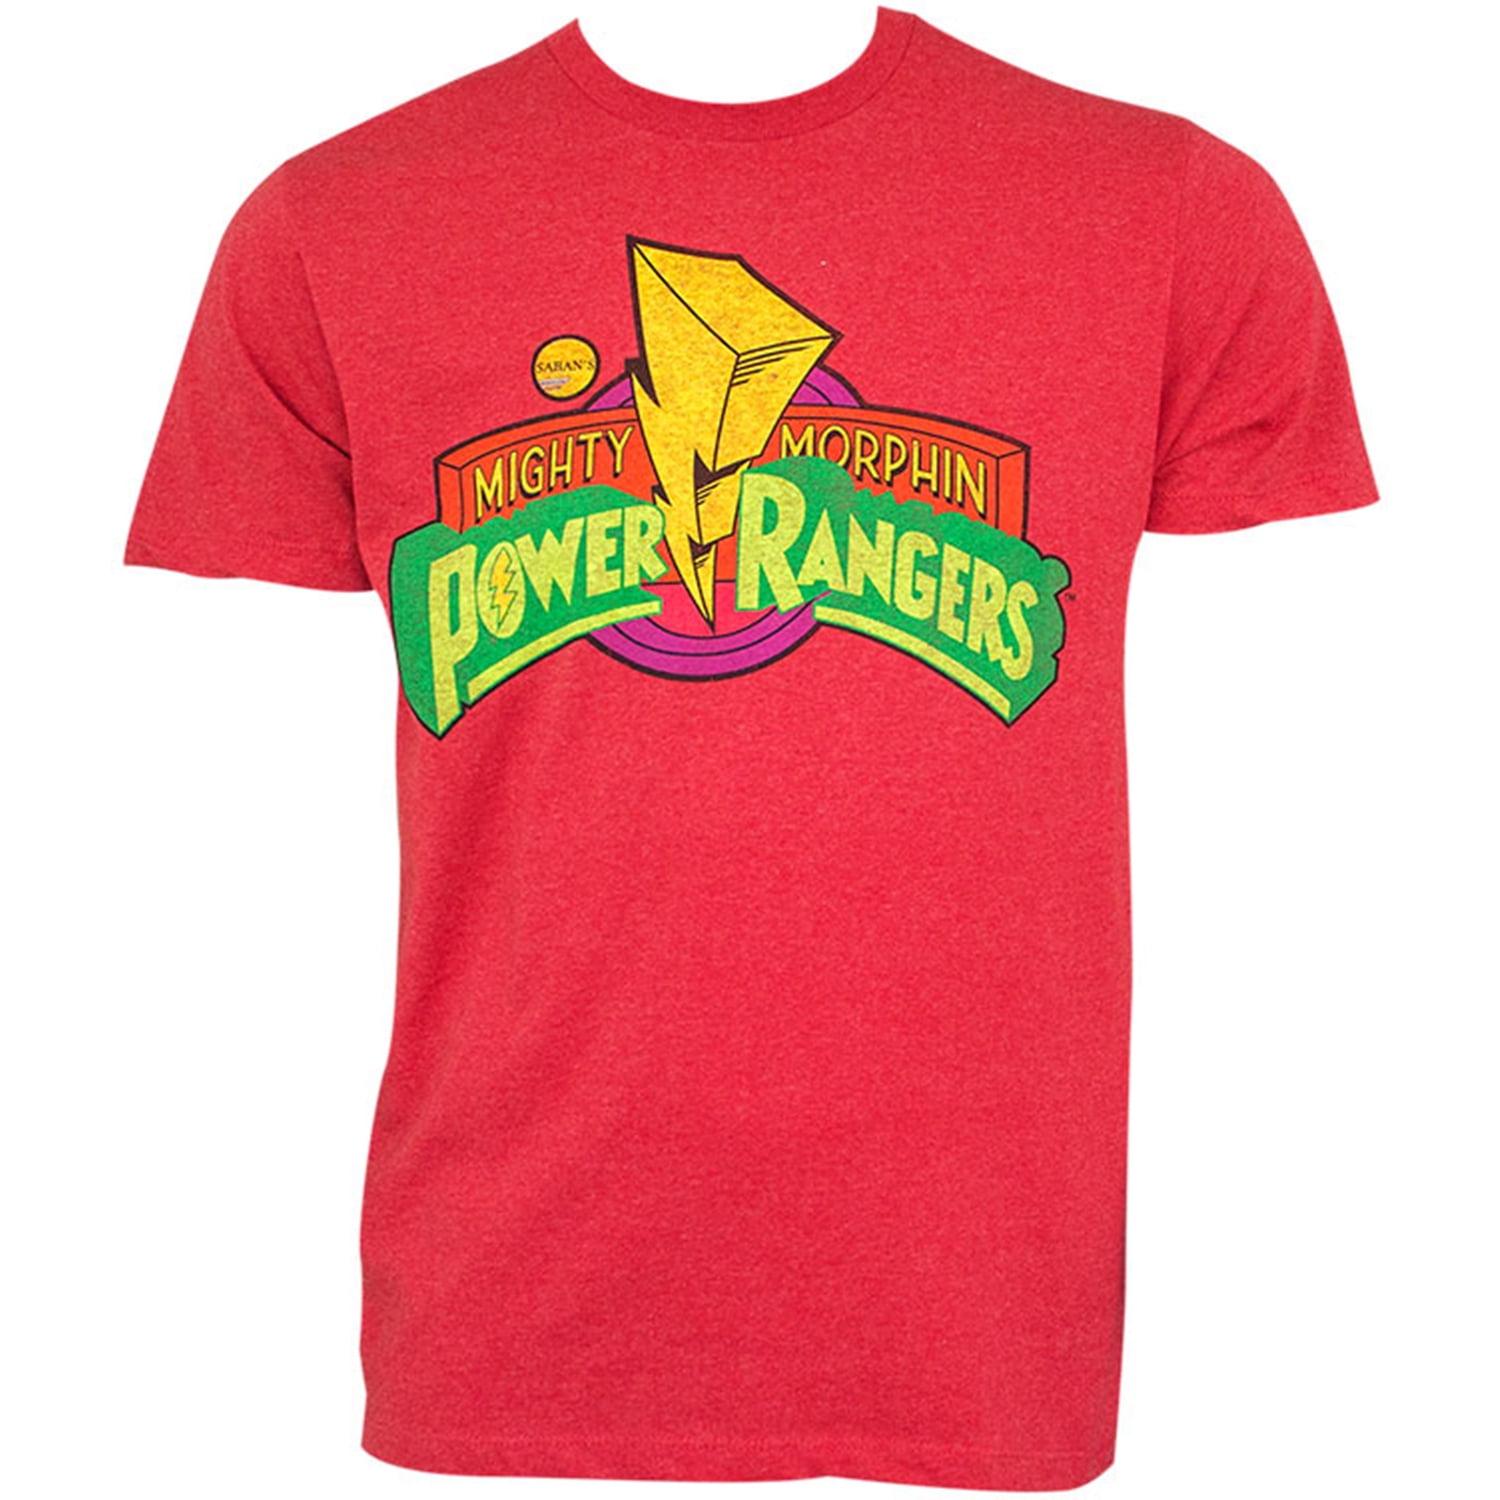 men's power ranger shirt